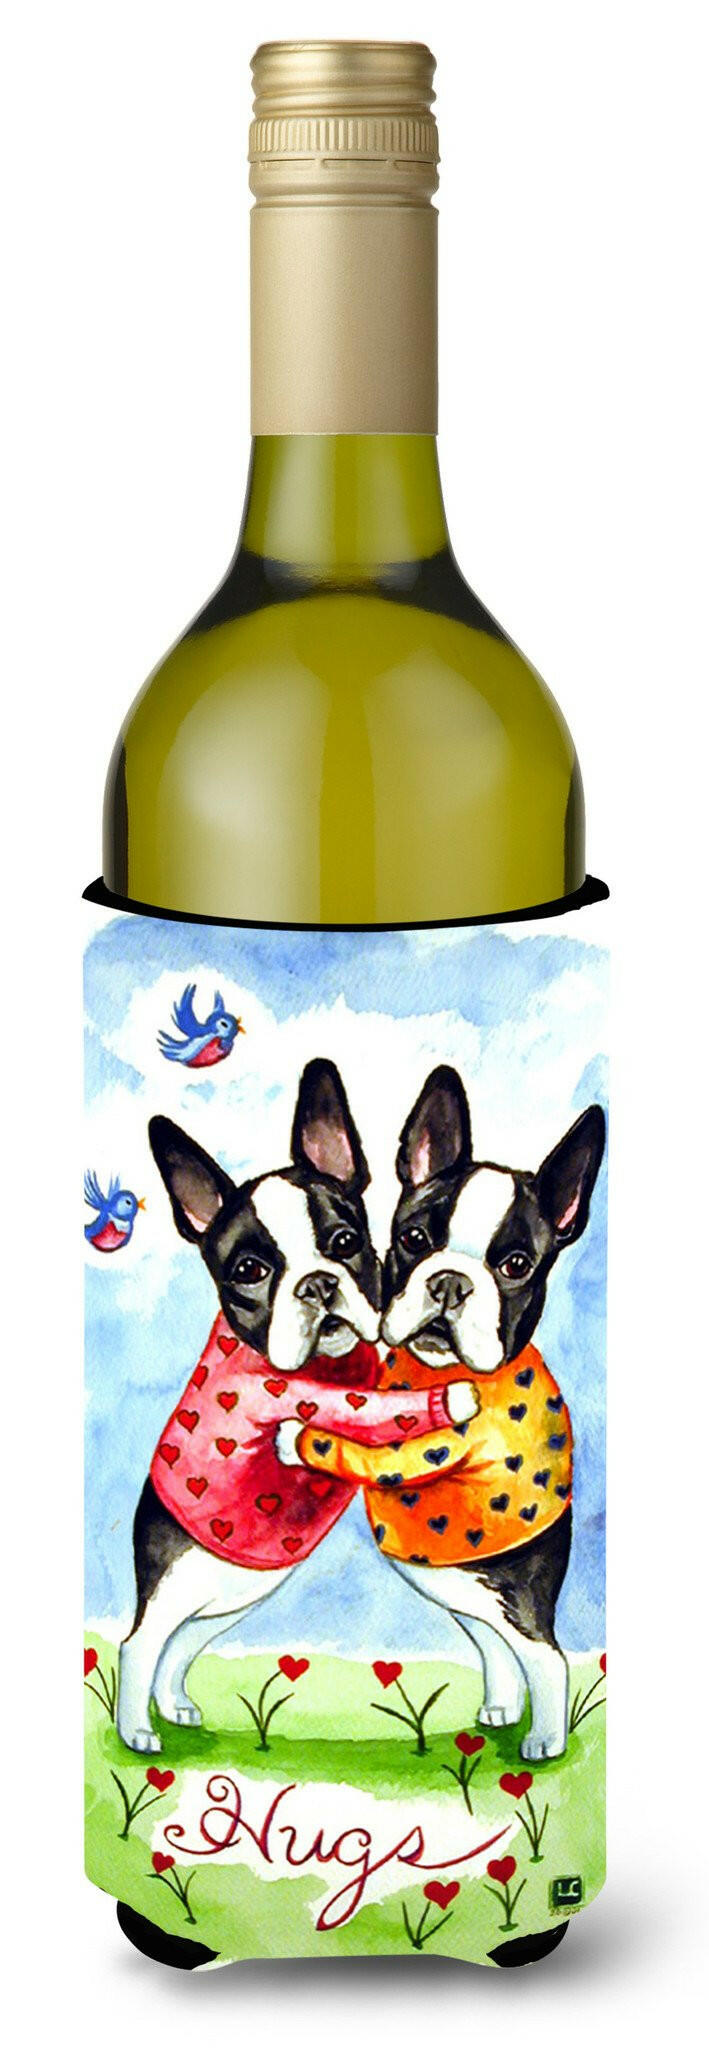 Hugs Boston Terrier Wine Bottle Beverage Insulator Beverage Insulator Hugger by Caroline's Treasures